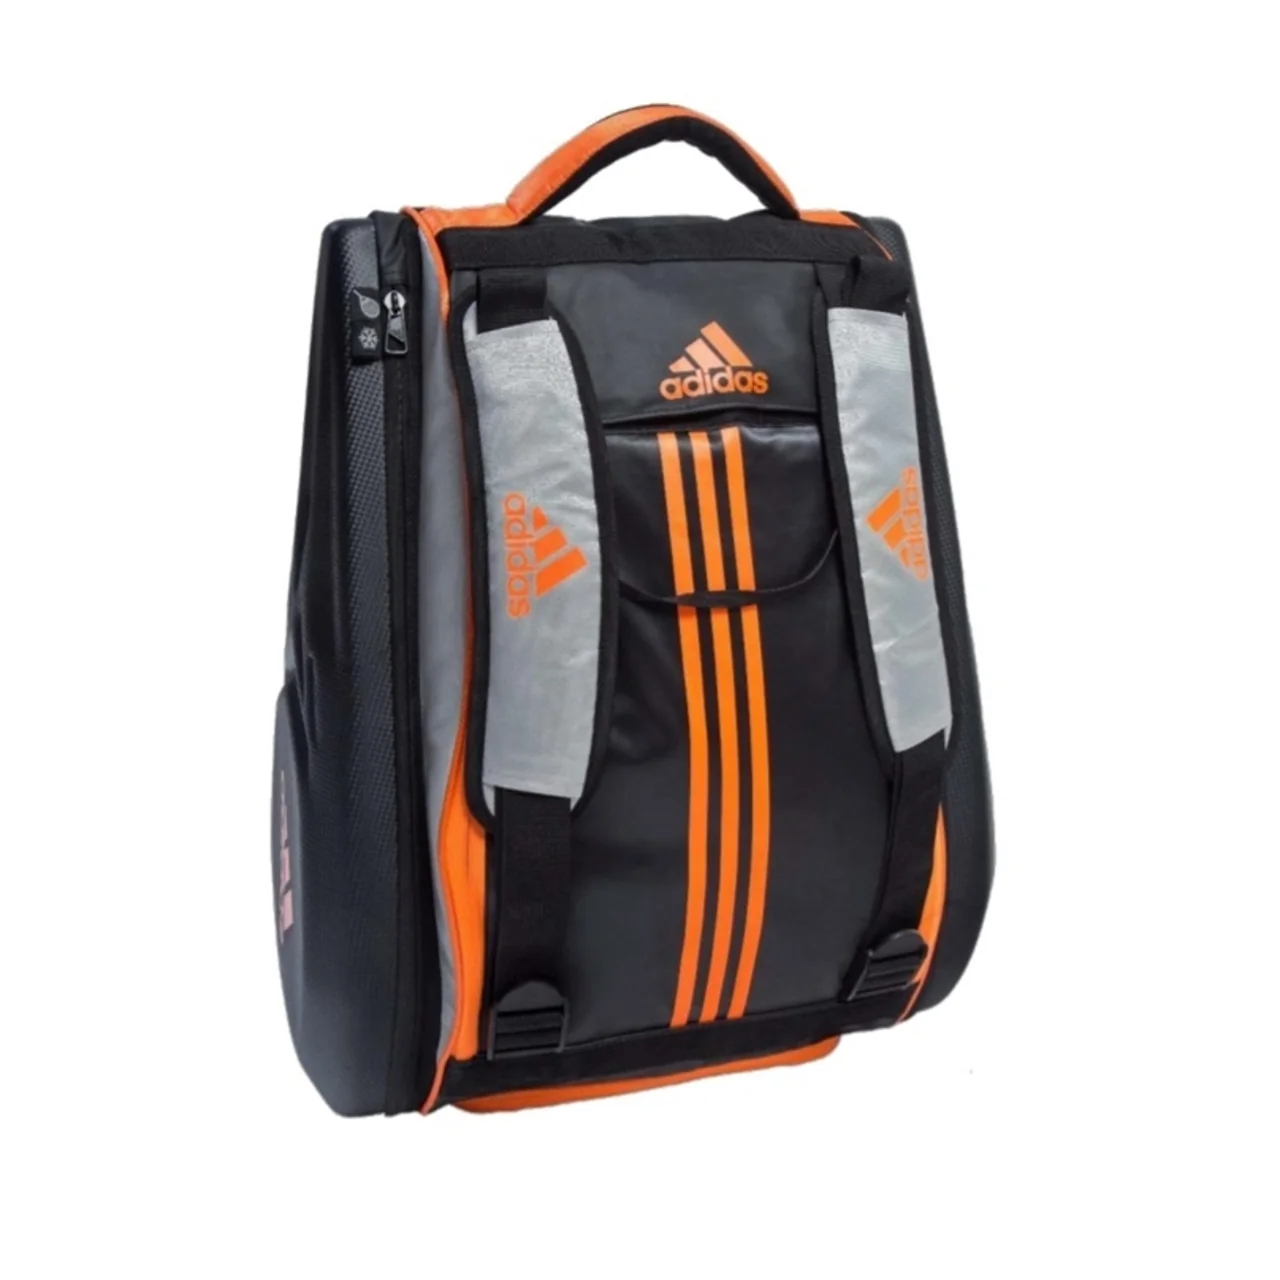 Adidas Adipower 1.8 Bag